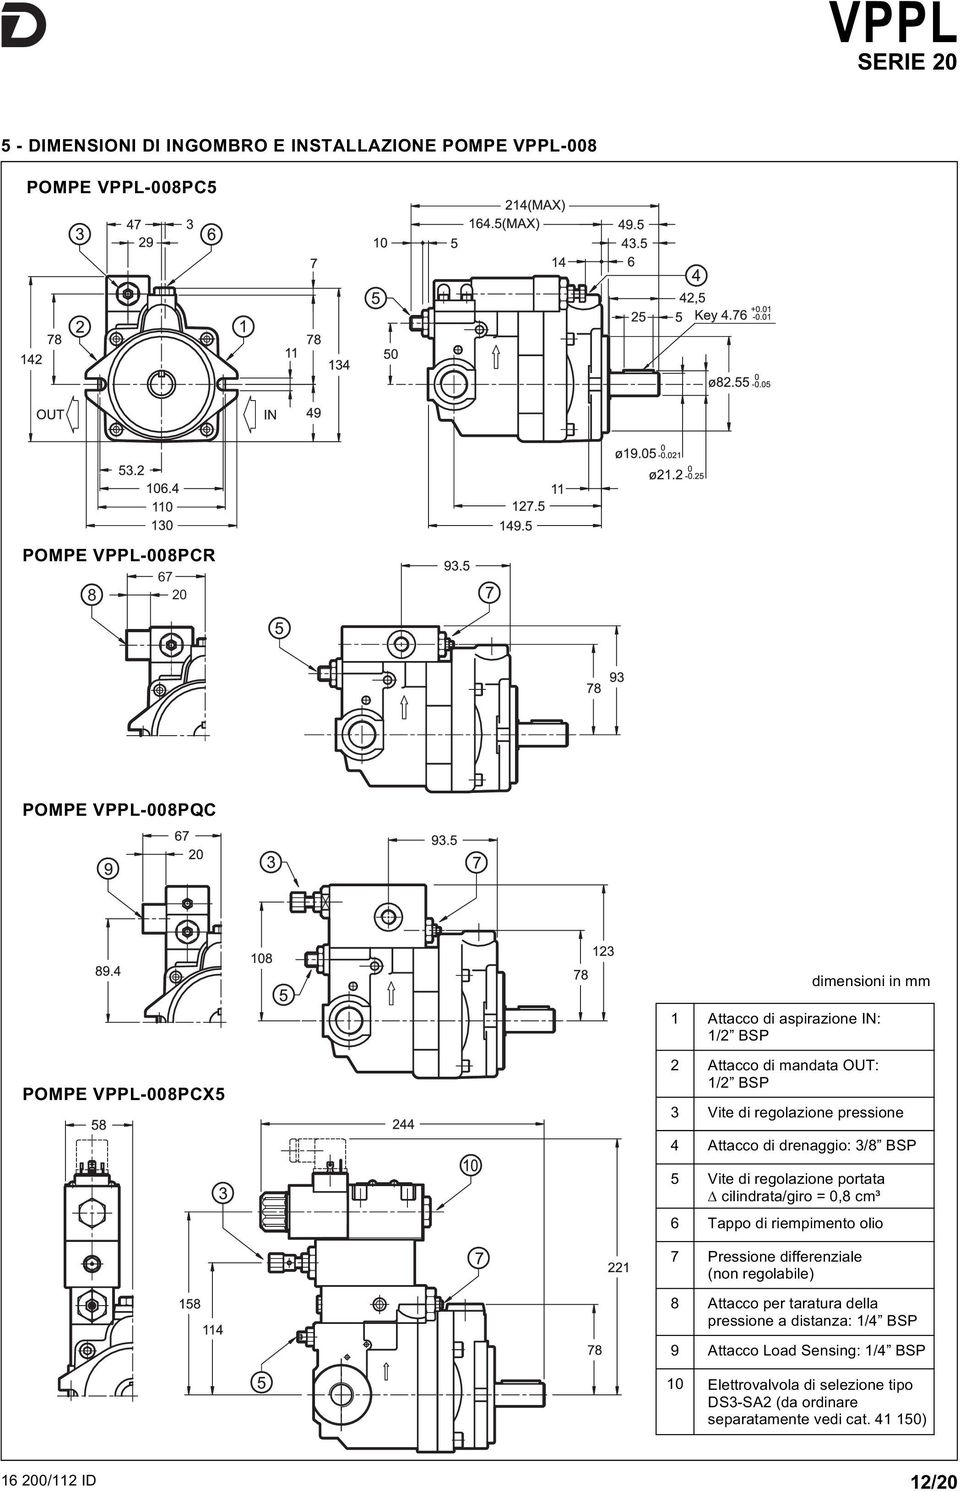 regolazione portata cilindrata/giro =,8 cm³ 6 Tappo di riempimento olio 7 Pressione differenziale (non regolabile) 8 Attacco per taratura della